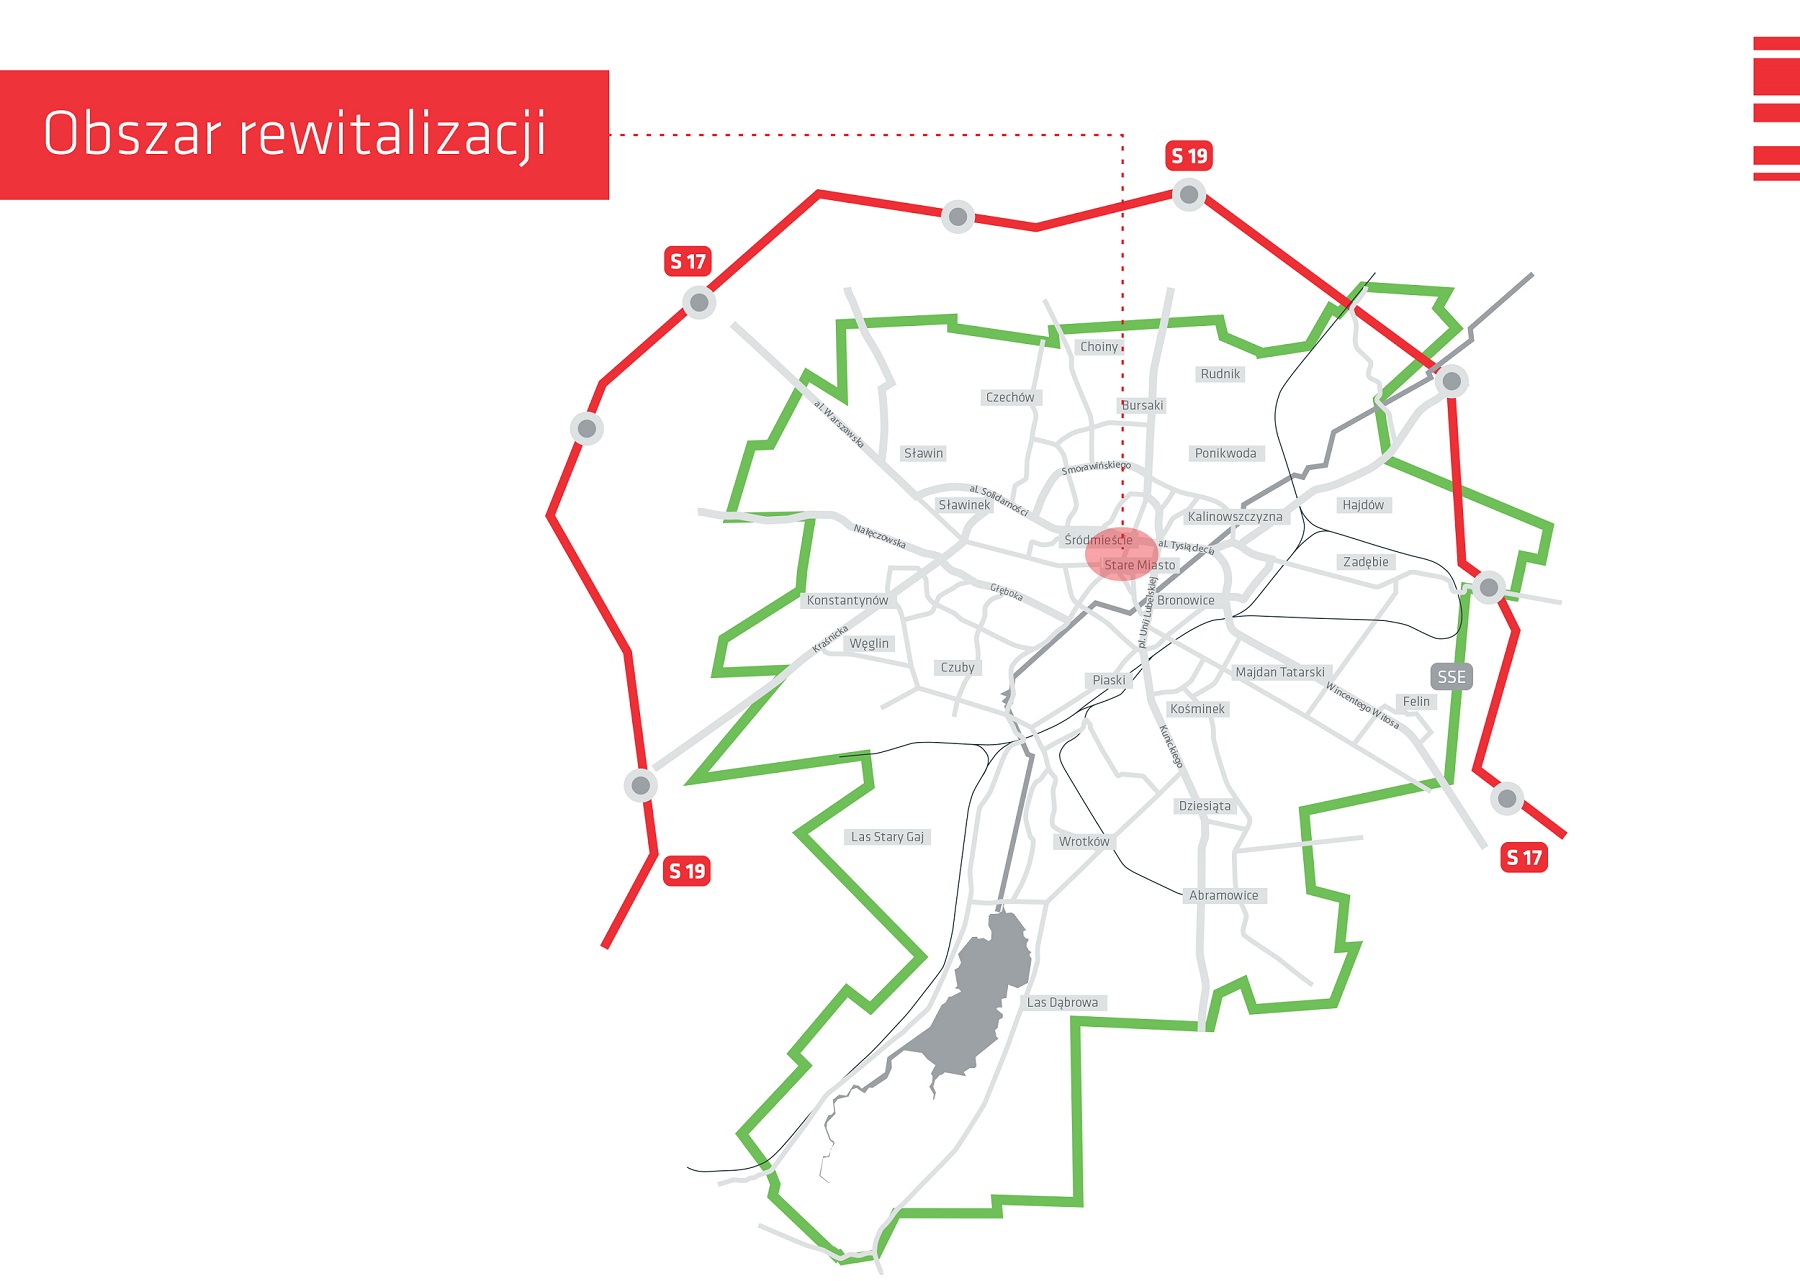 Mapa obszaru rewitalizacji w Lublinie, Źródło: Urząd Miasta Lublin